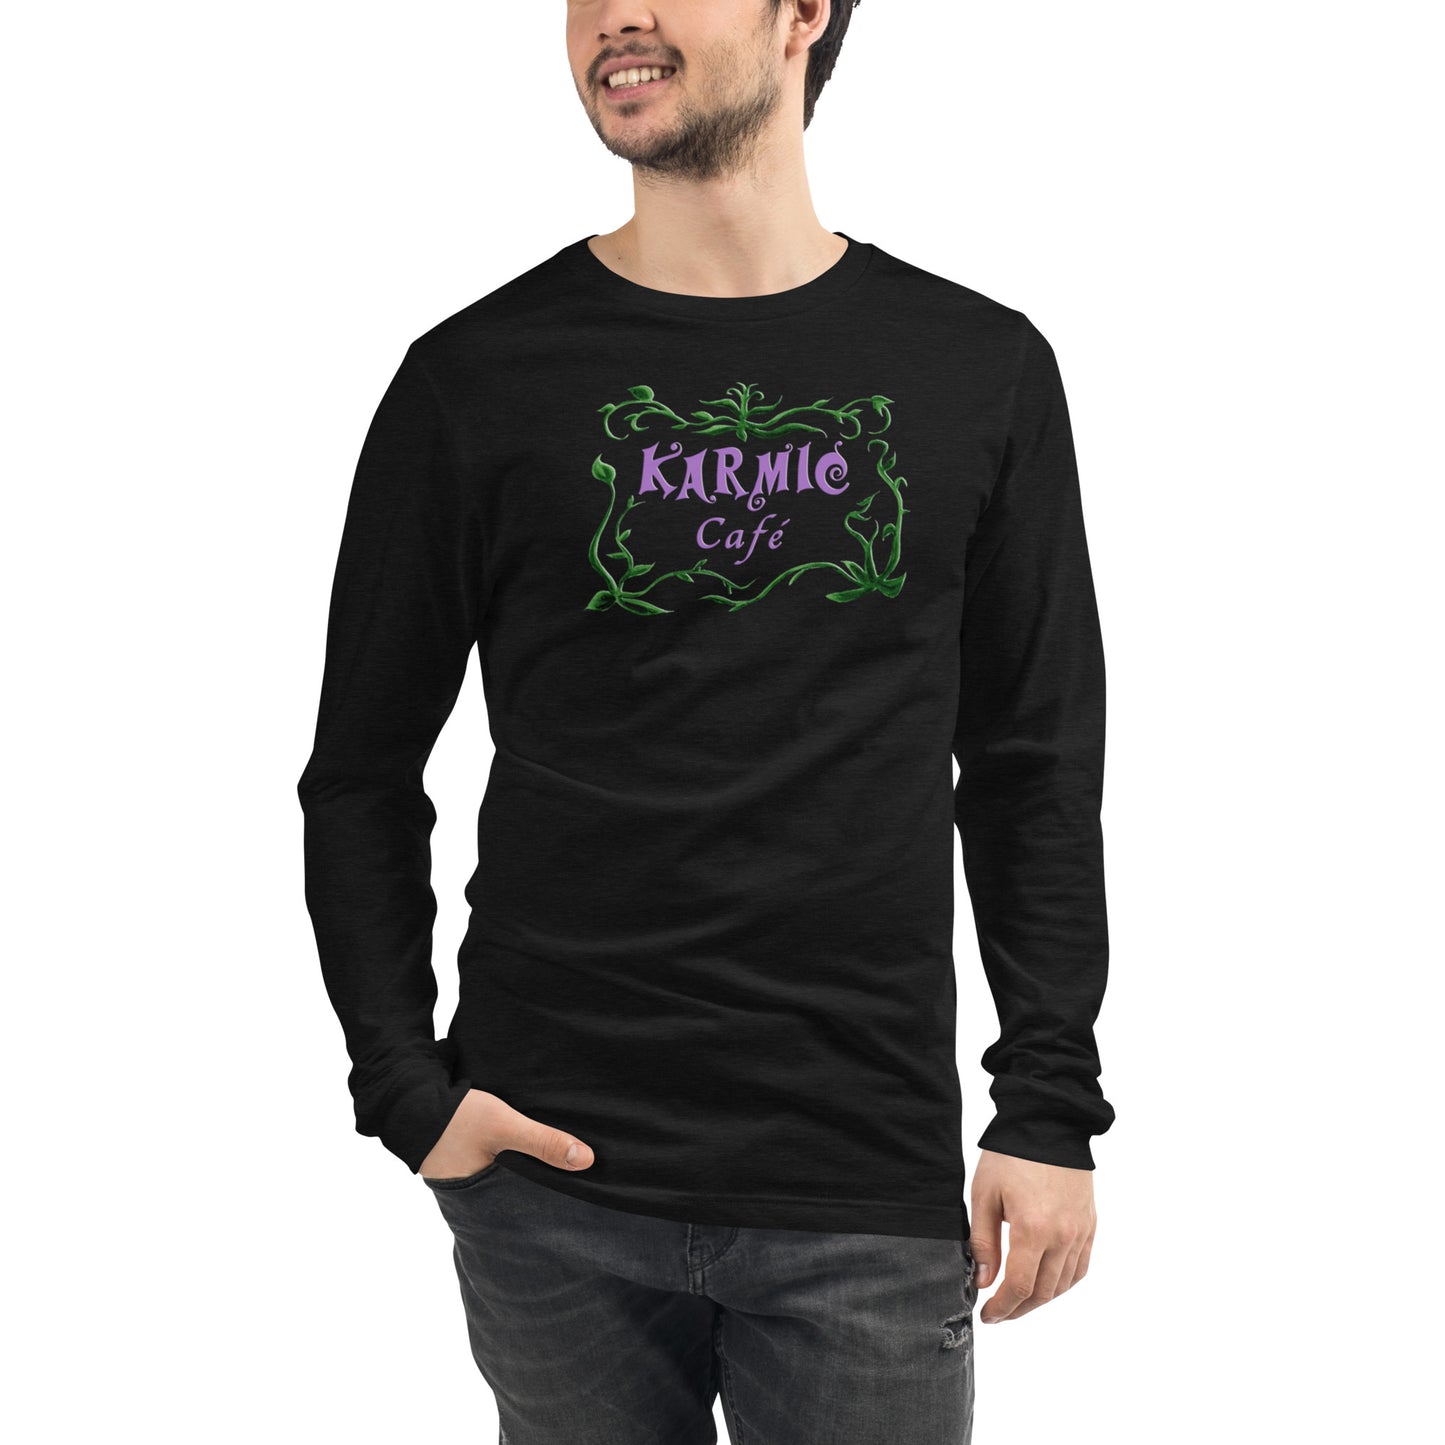 Super Comfy Karmic Cafe T-shirt (black long-sleeved)